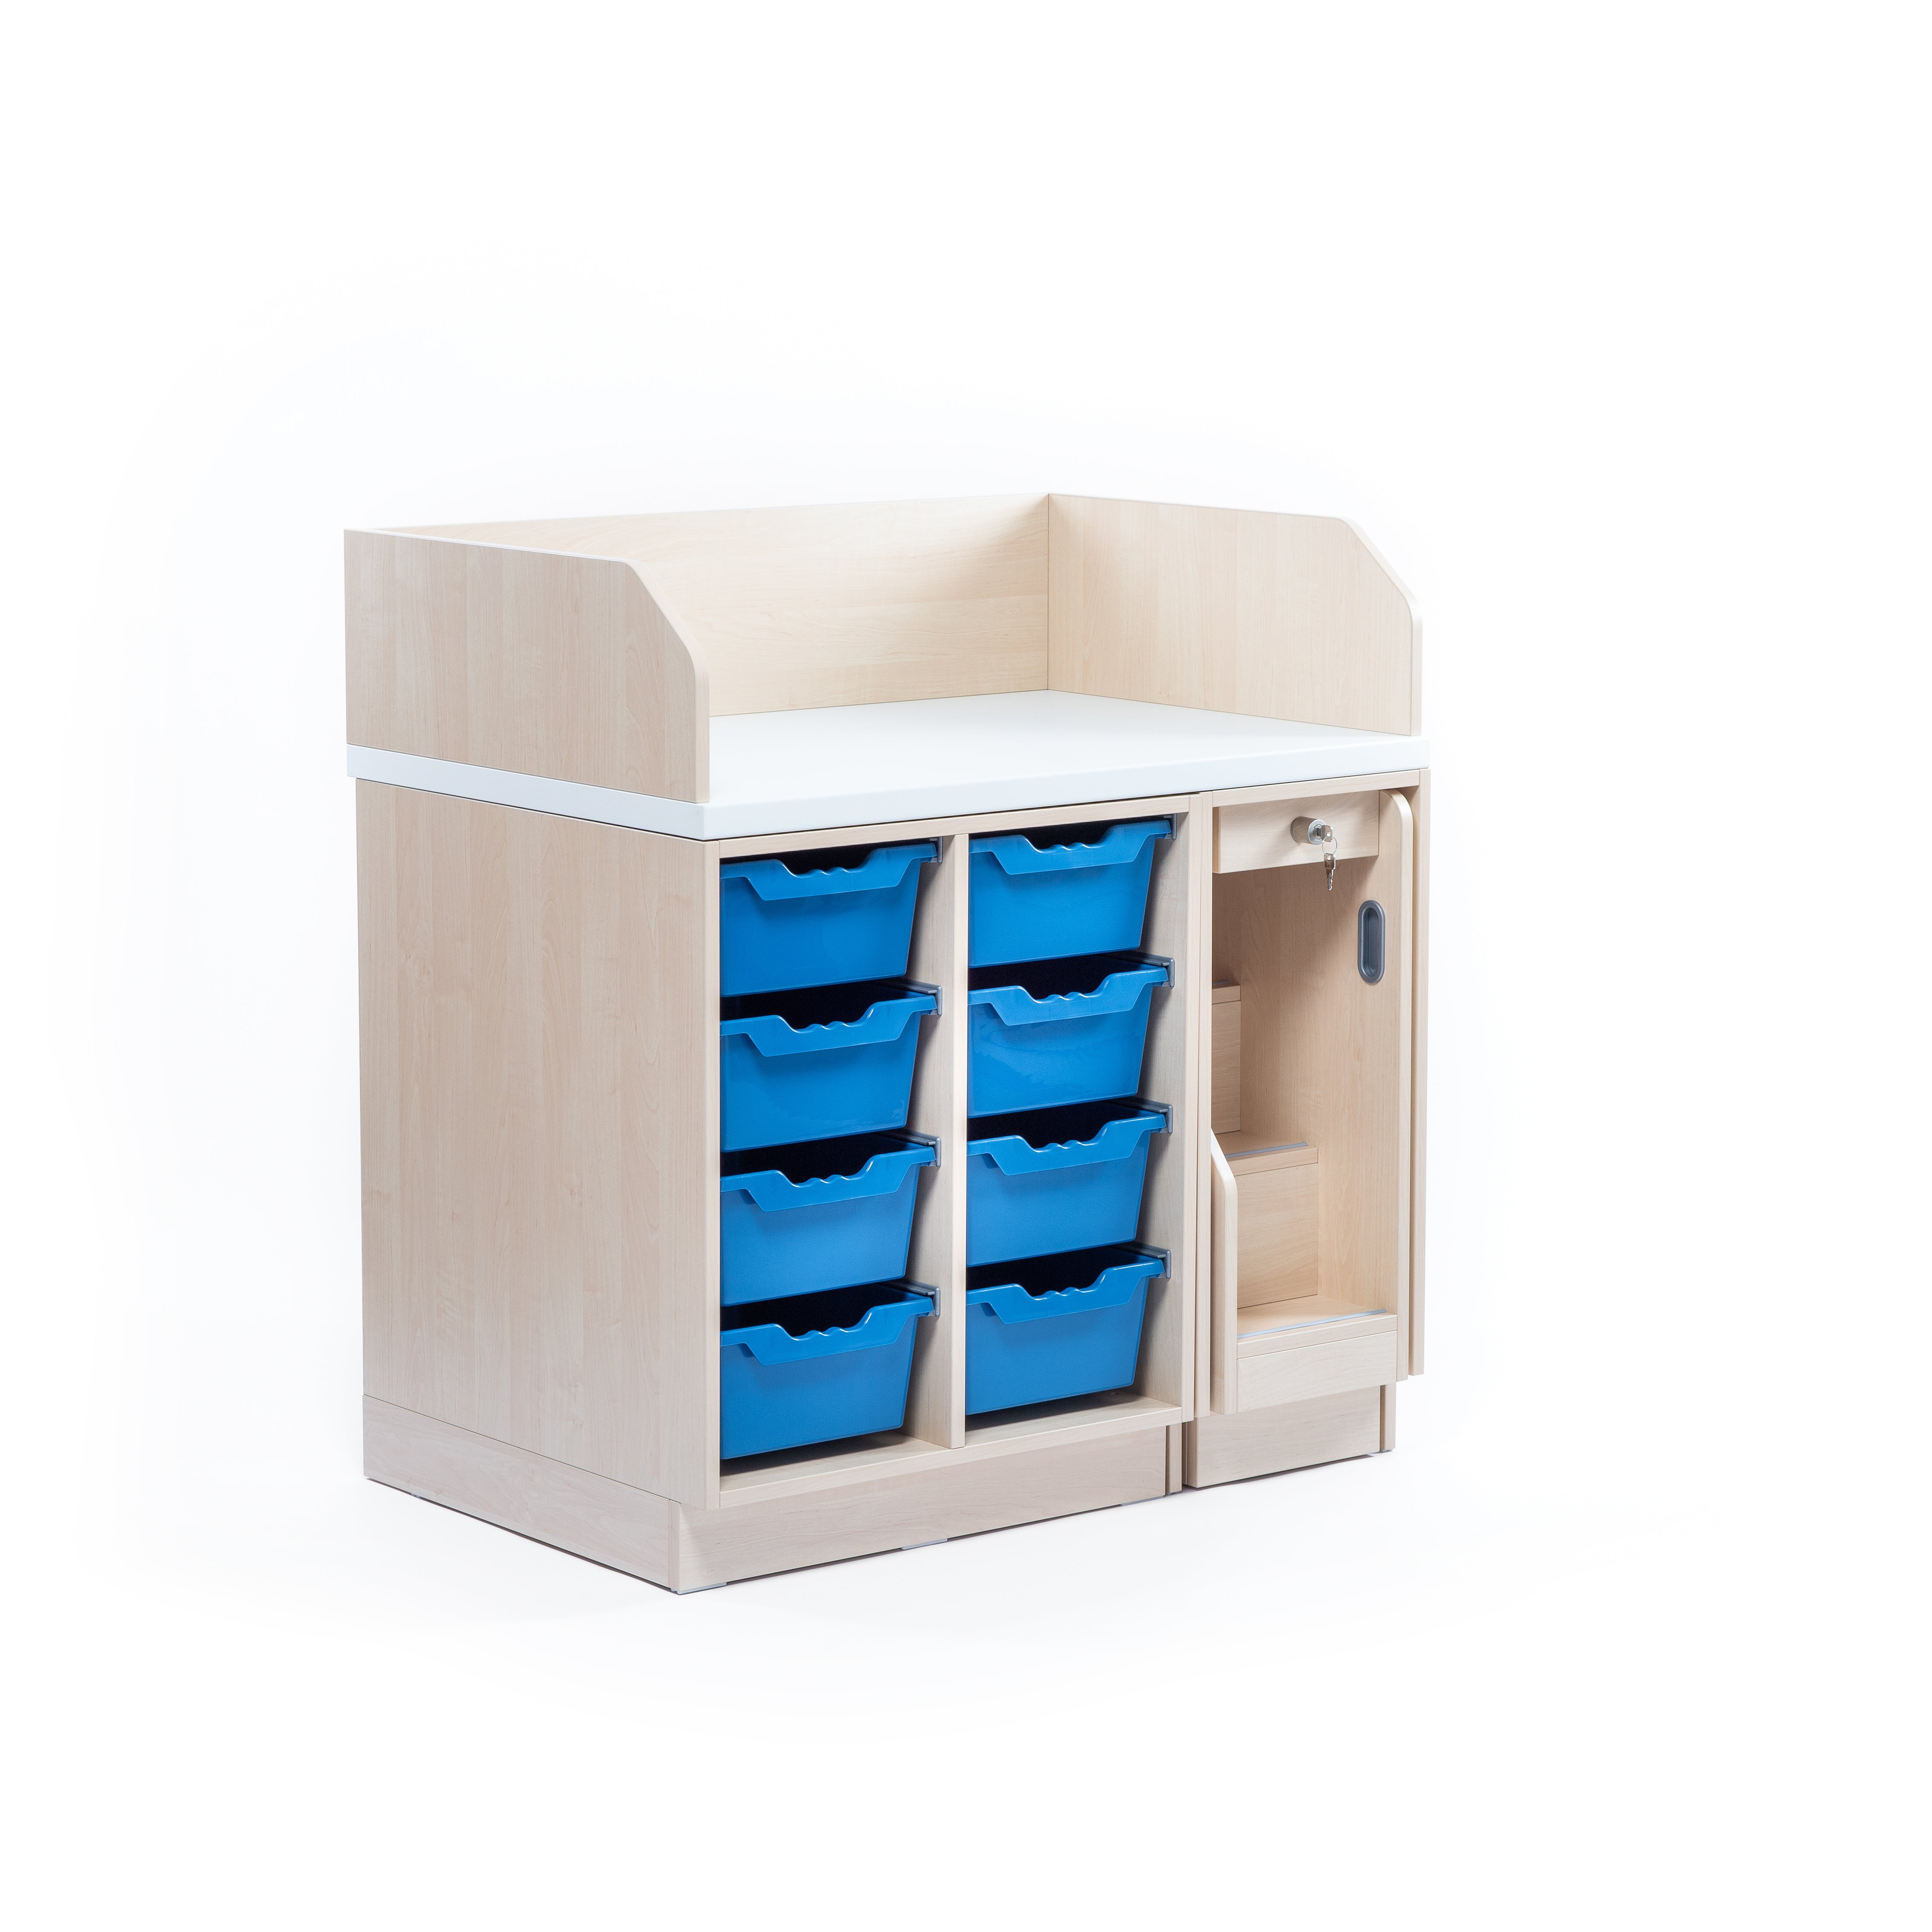 Wickelkommode Kita mit eingefahrener Treppe und blauen Ablageboxen aus Kunststoff